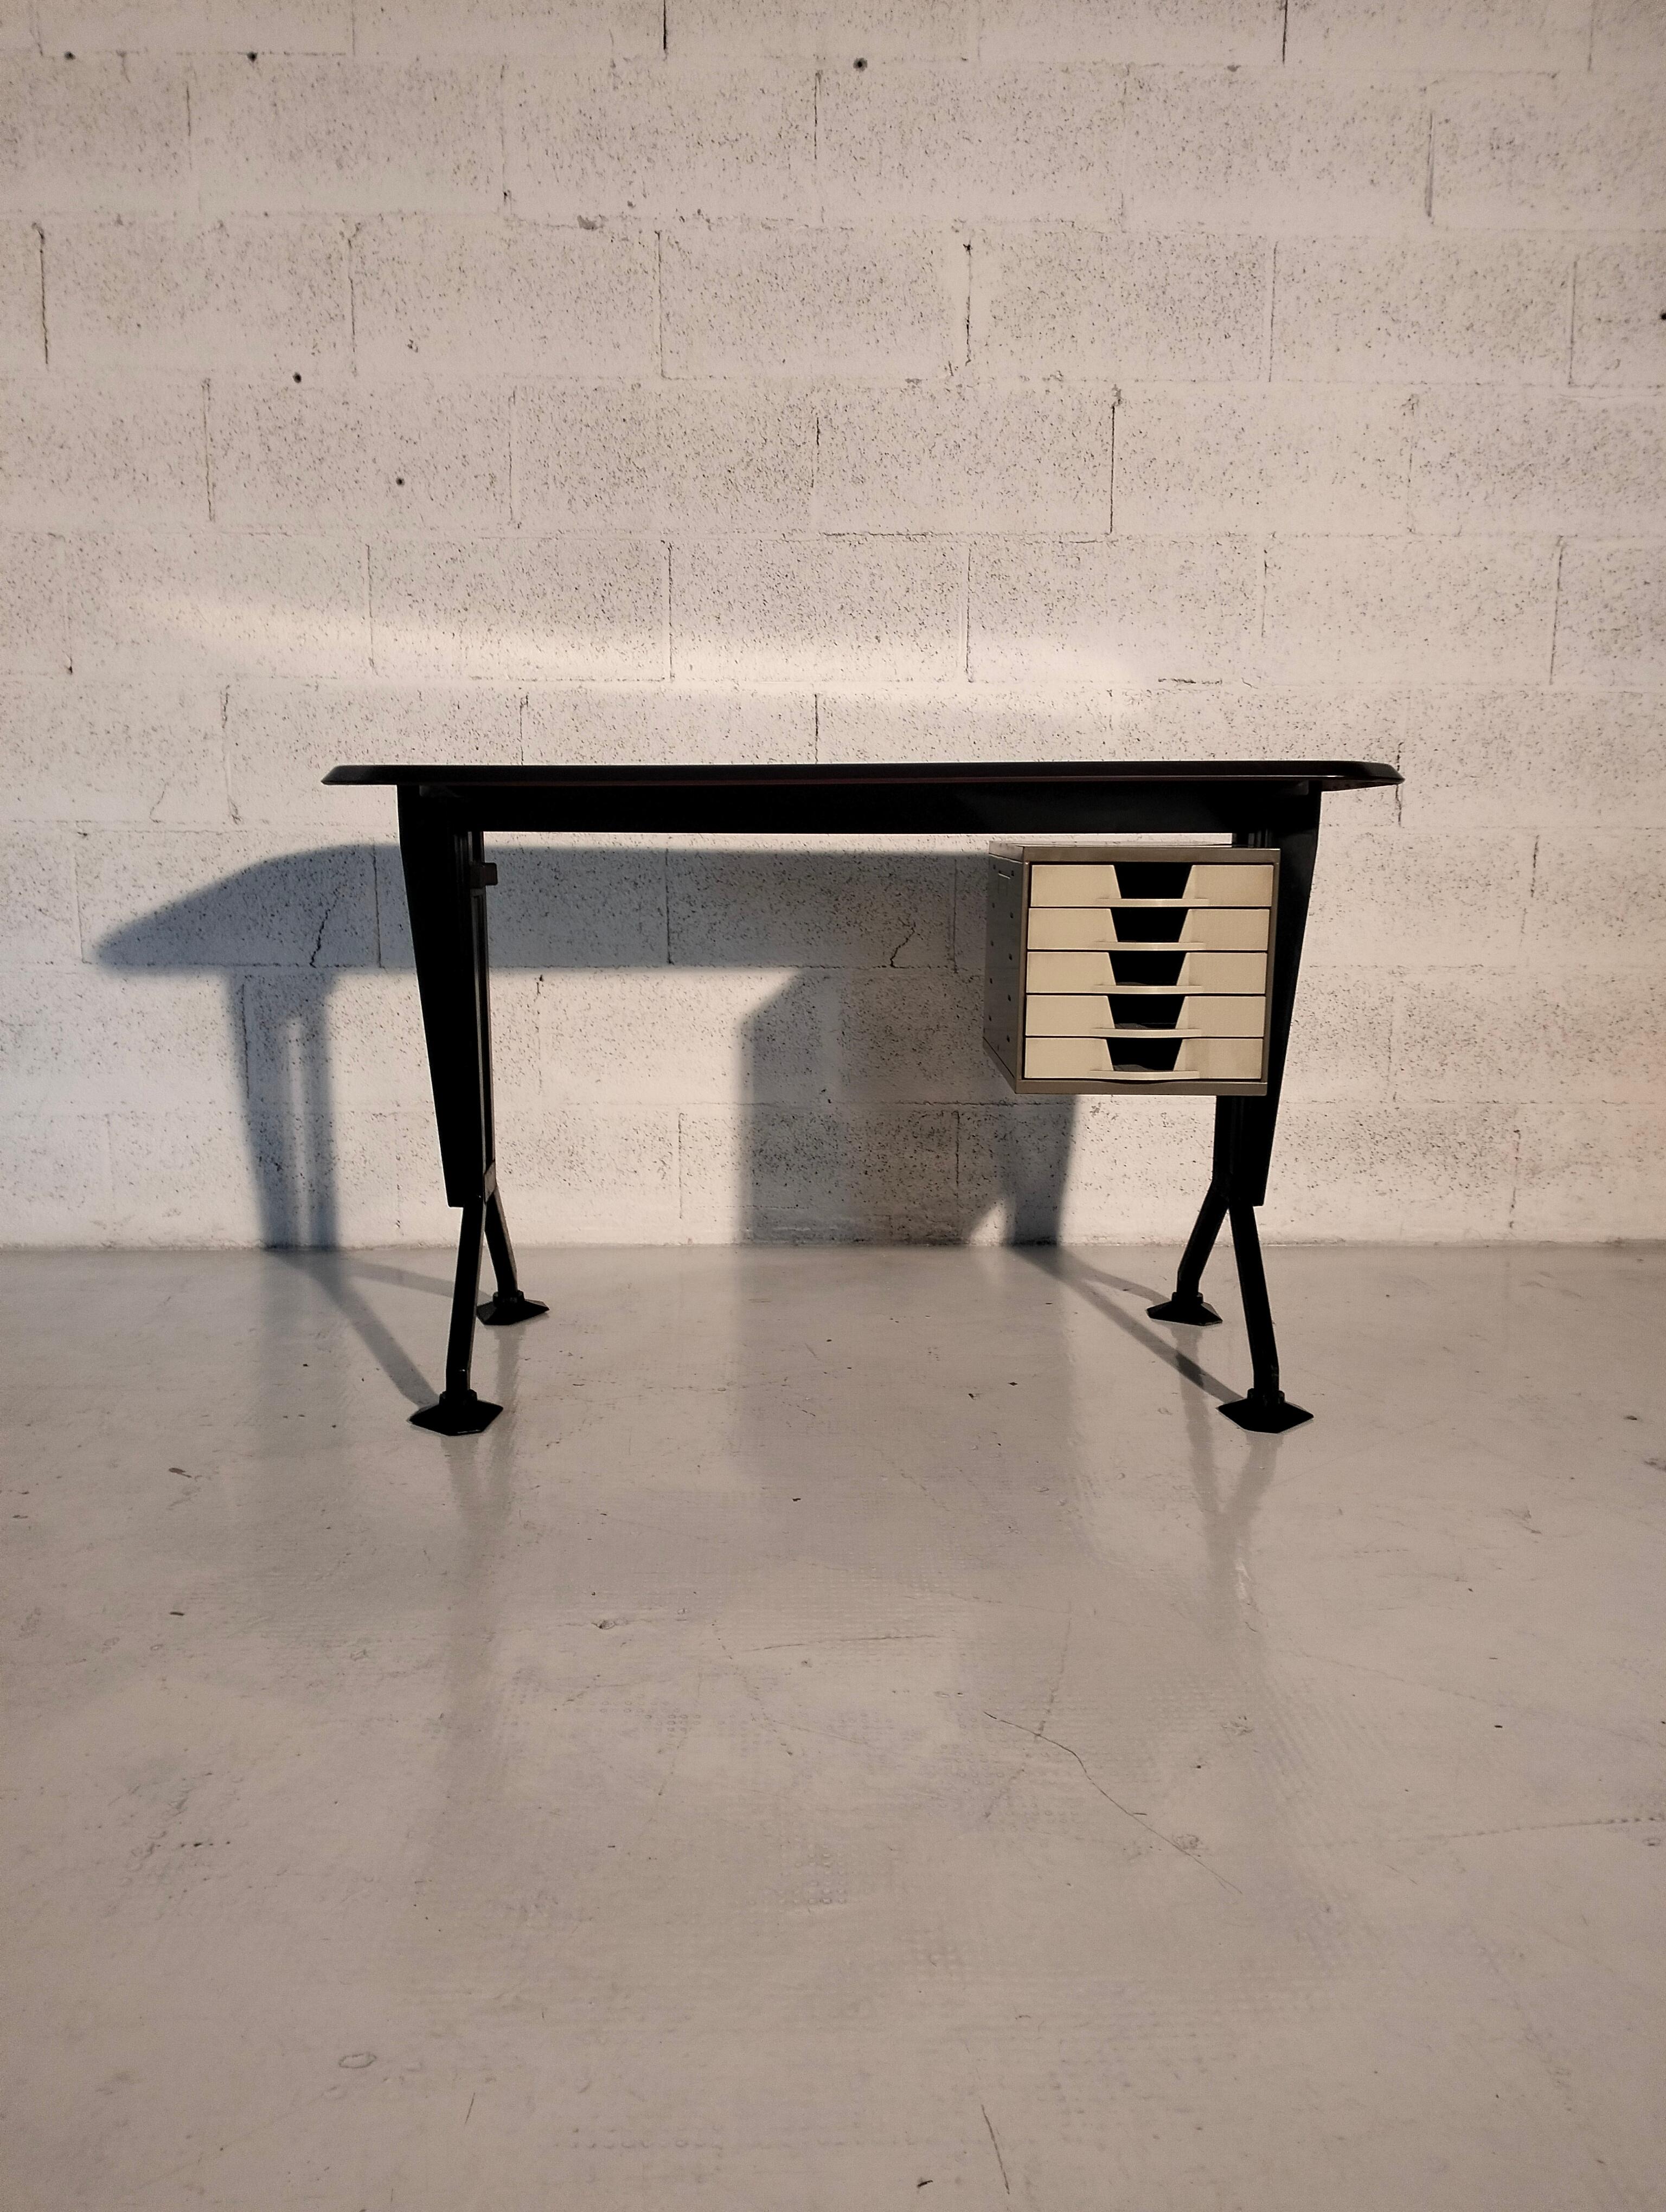 Schreibtisch, entworfen in den 1960er Jahren von Studio BBPR für Olivetti Synthesis.
Der Schreibtisch ist mit einer Kommode mit fünf Schubladen ausgestattet. Ikonische Büromöbel, die in der Geschichte des Designs einen herausragenden Platz